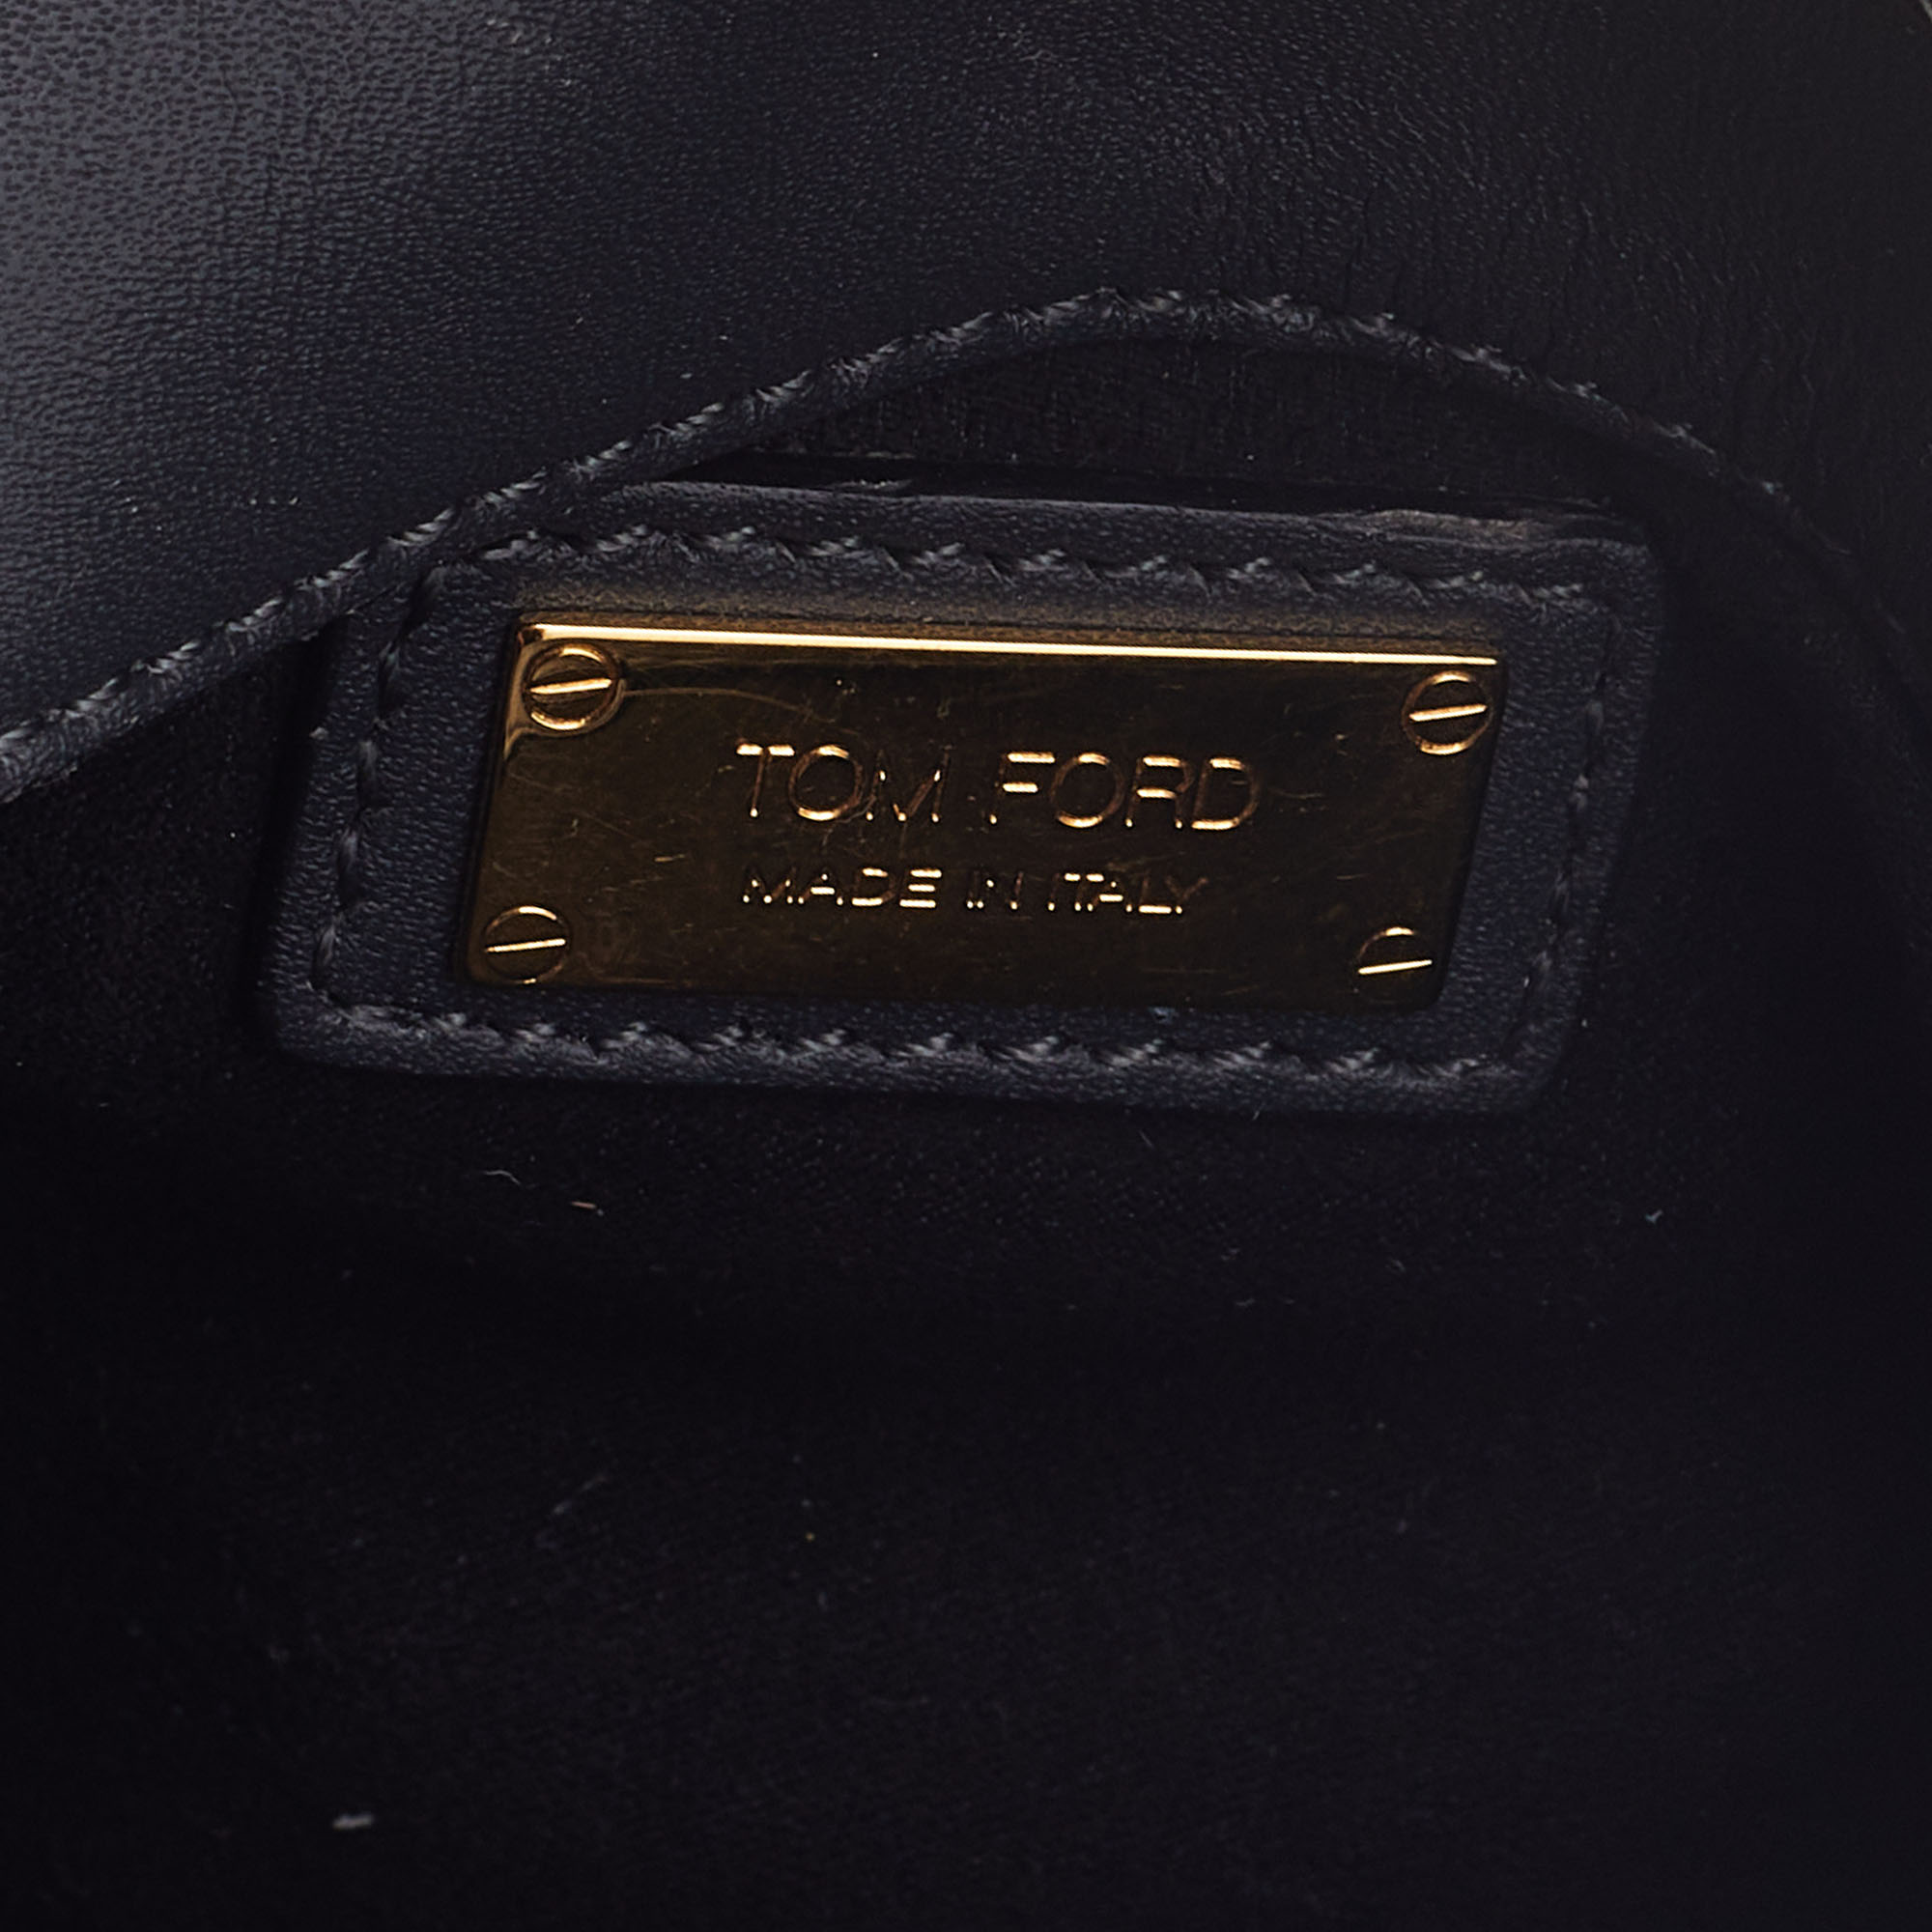 Tom Ford Olive Green Watersnake Leather Mini Natalia Crossbody Bag